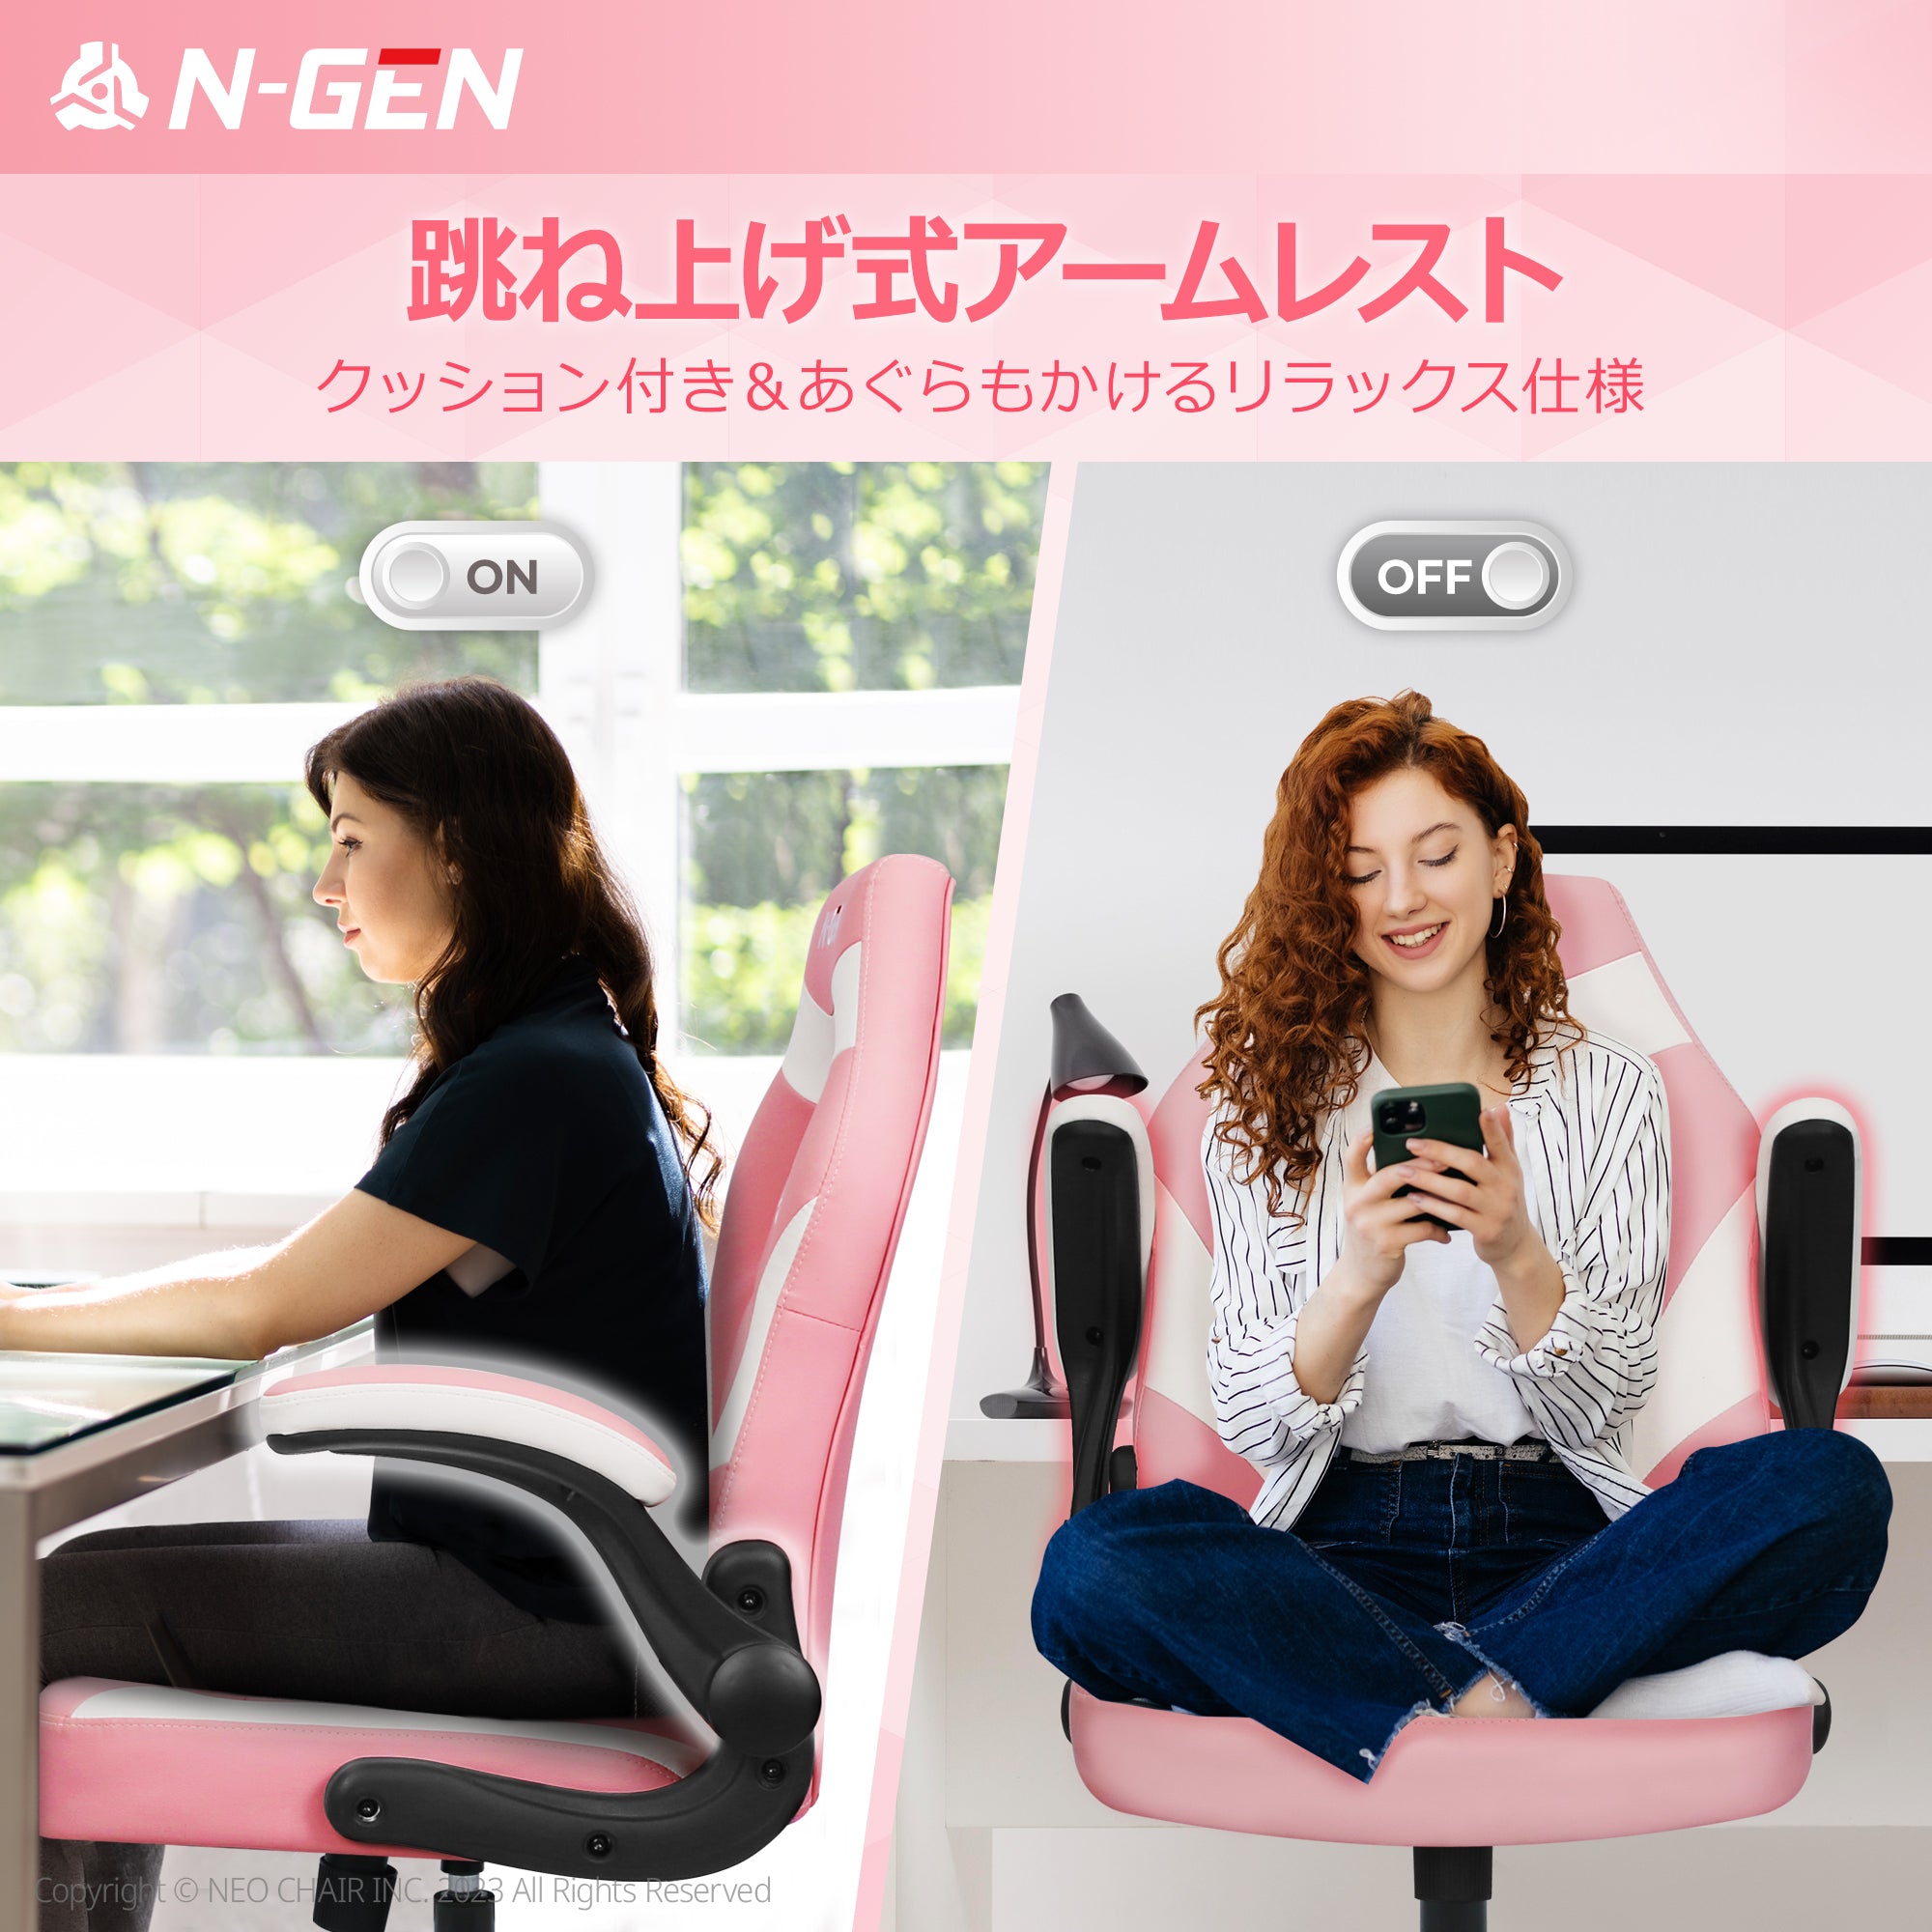 APEX 【N-GEN】 ゲーミングチェア オフィスチェア ゲーミング デスク